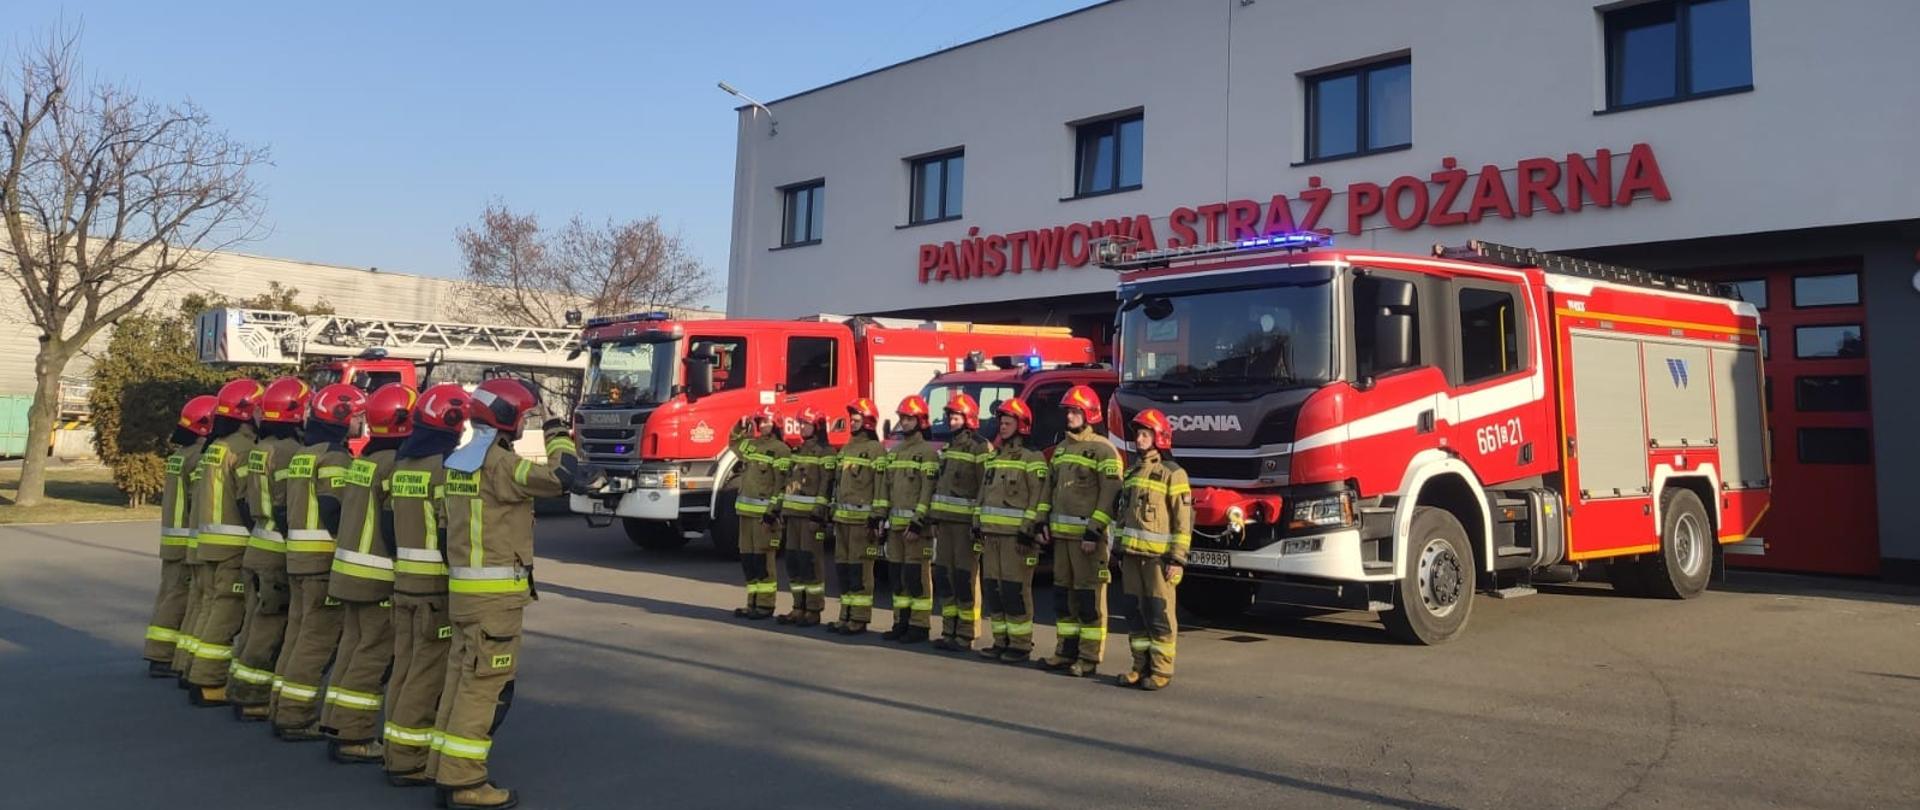 Na zdjęciu zbiórka strażaków oddających hołd poległym strażakom z Ukrainy. W tle samochody strażackie oraz budynek JRG.